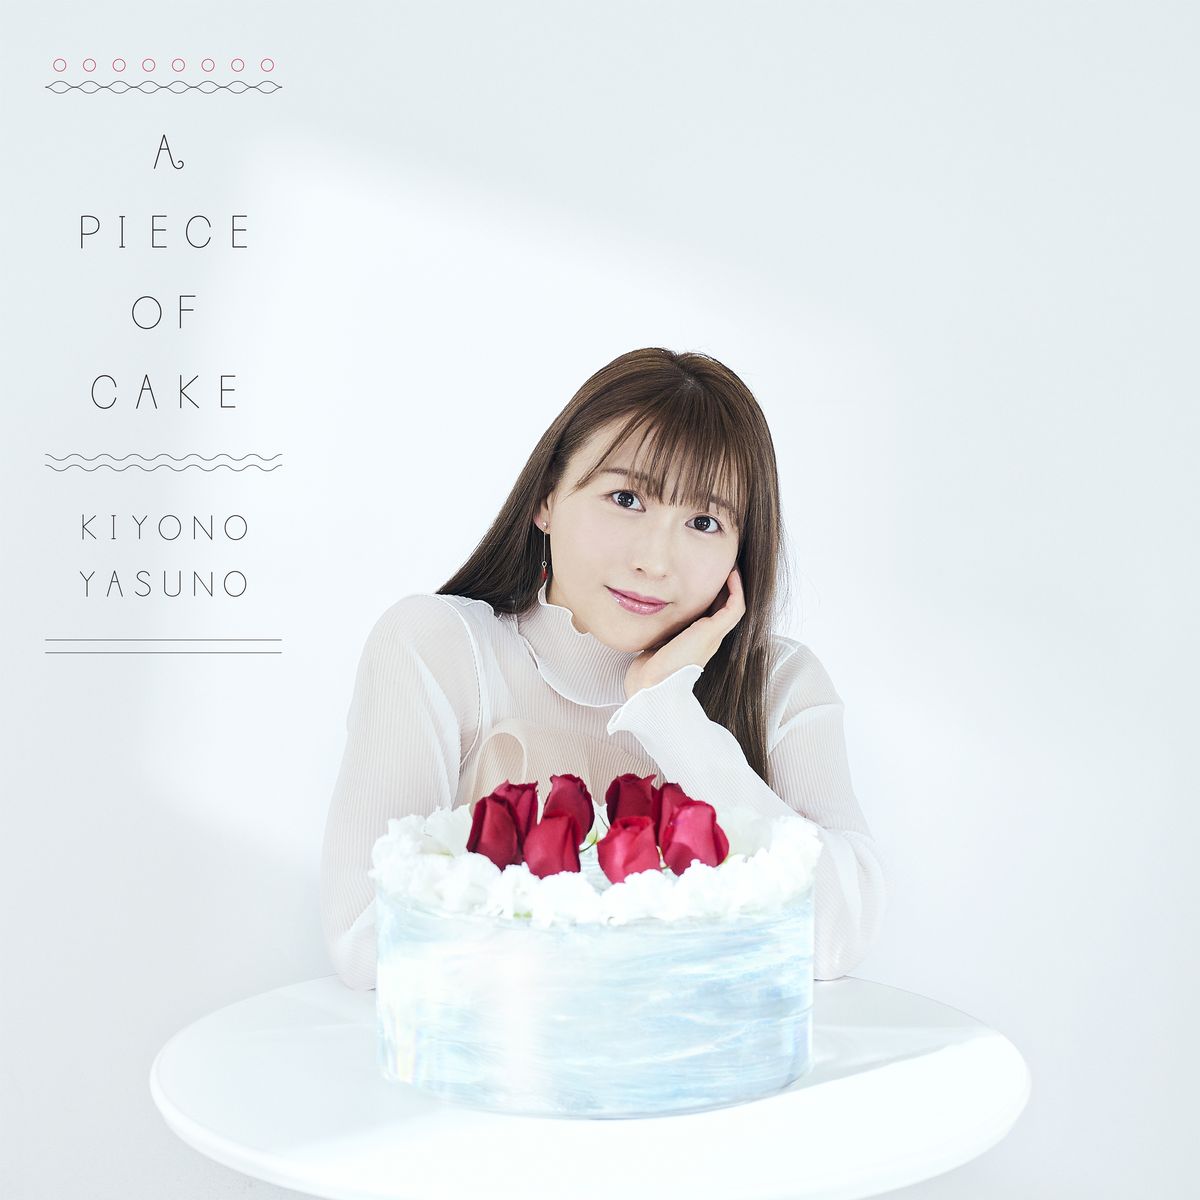 『安野希世乃 - A piece of cake 歌詞』収録の『A PIECE OF CAKE』ジャケット